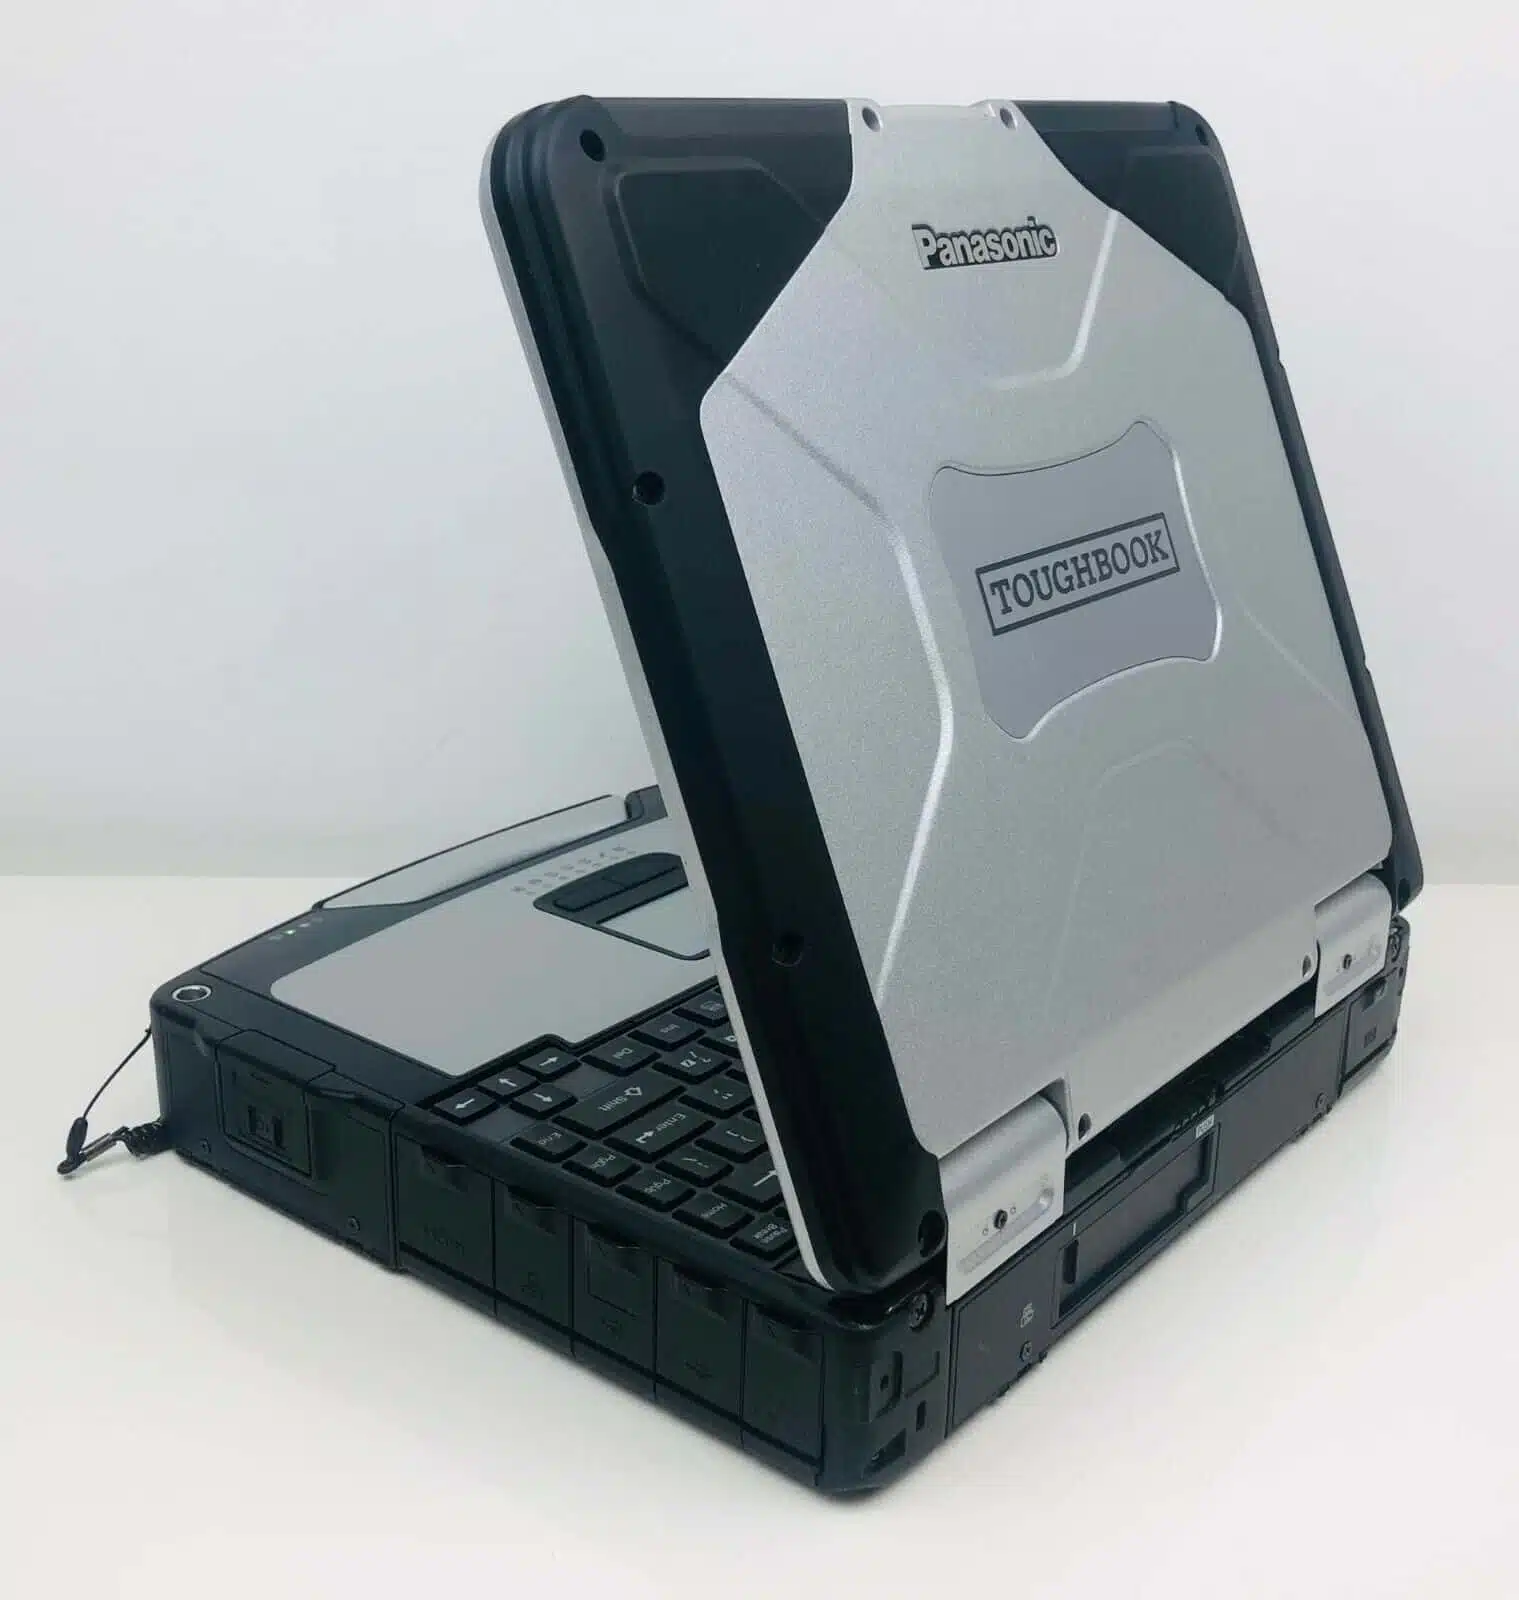 Panasonic Toughbook mk4 core i5 - Qualité militaire